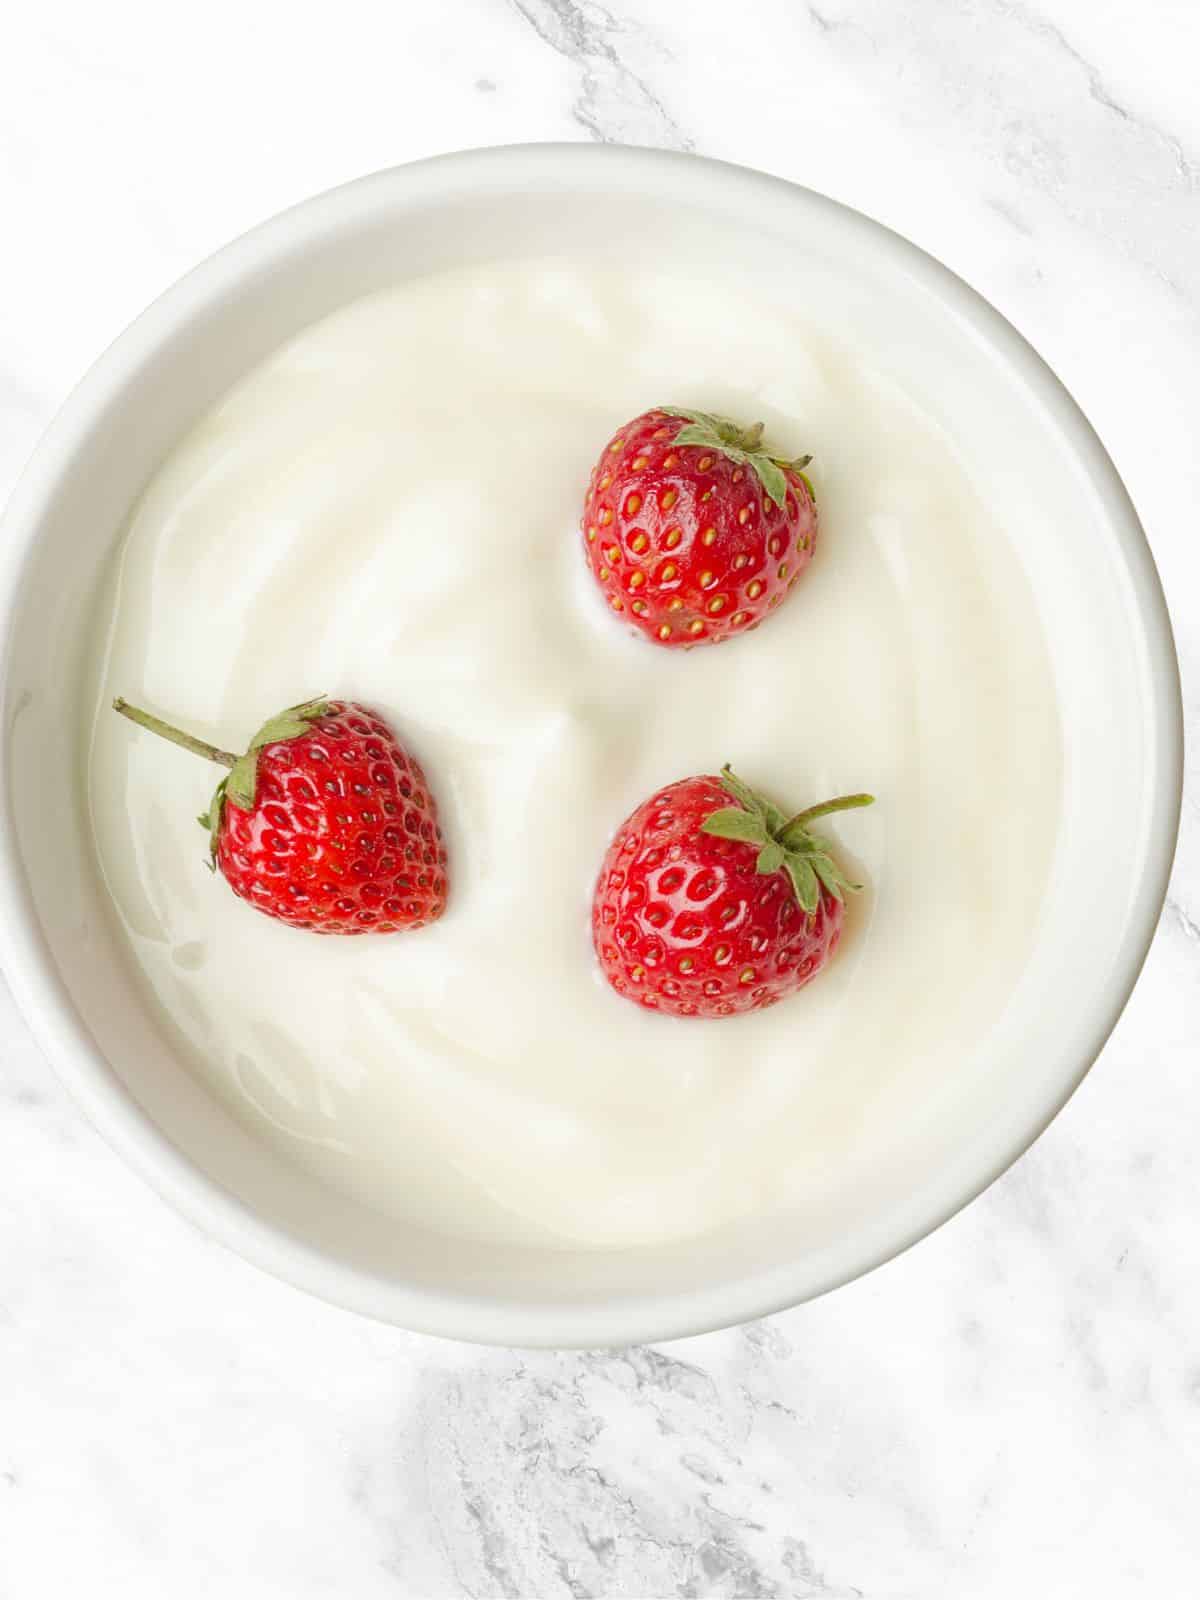 homemade Greek yogurt with strawberries.